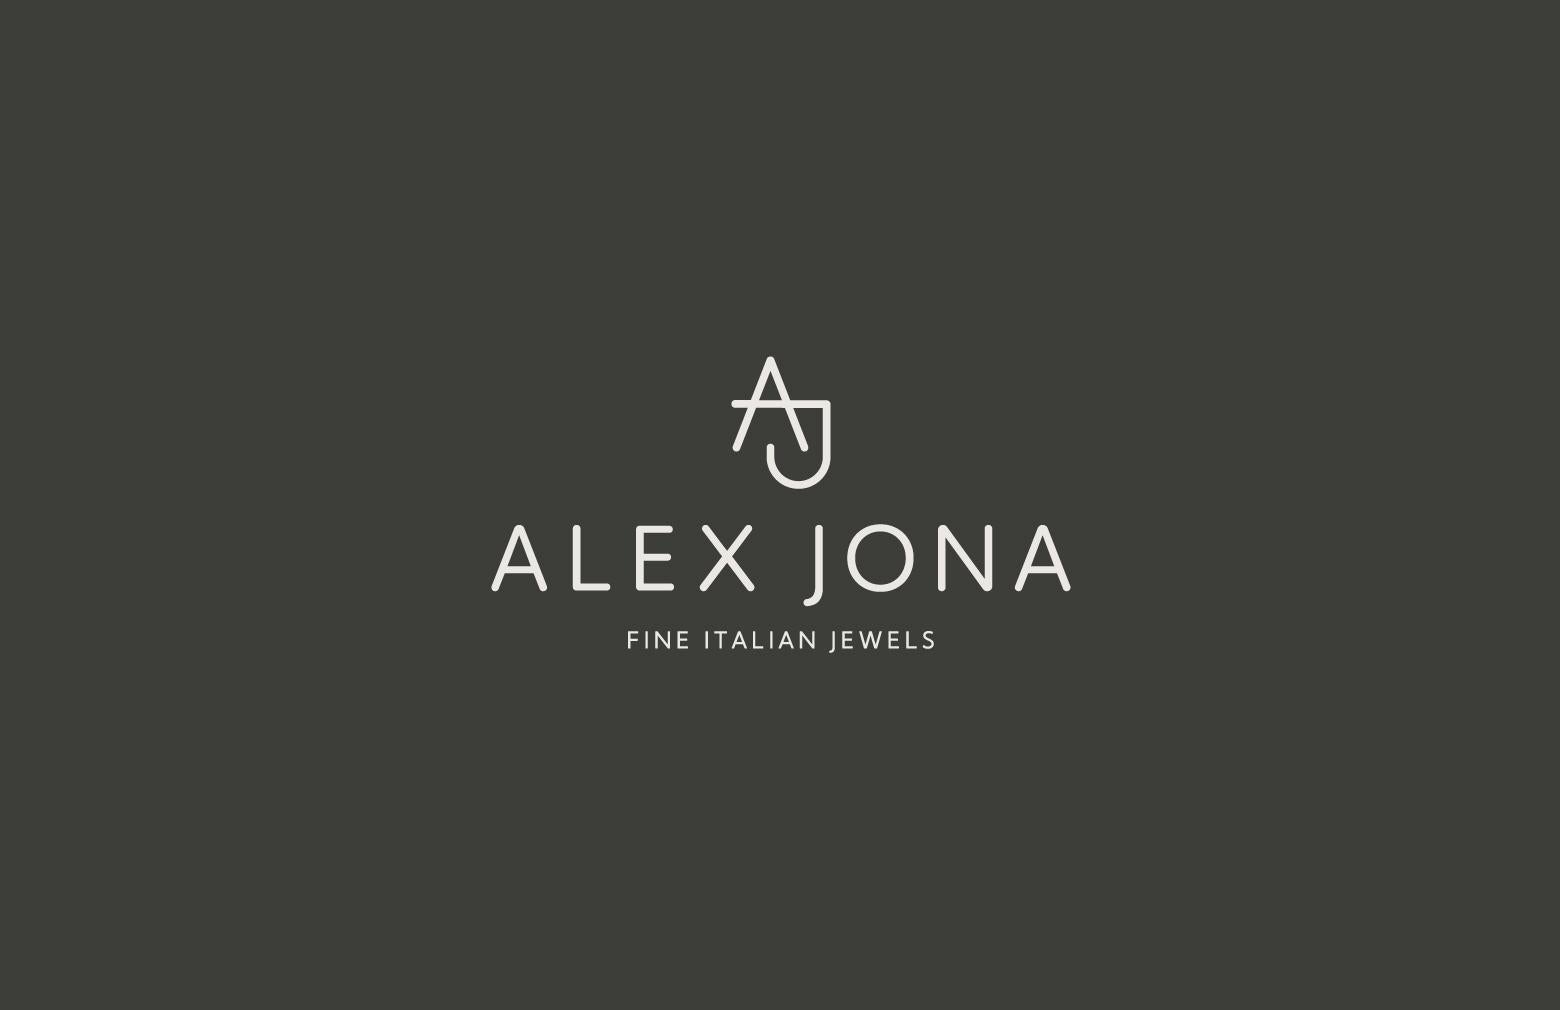 Alex Jona Briolette-Cut Black Diamond 18 Karat White Gold Link Chain Necklace For Sale 5